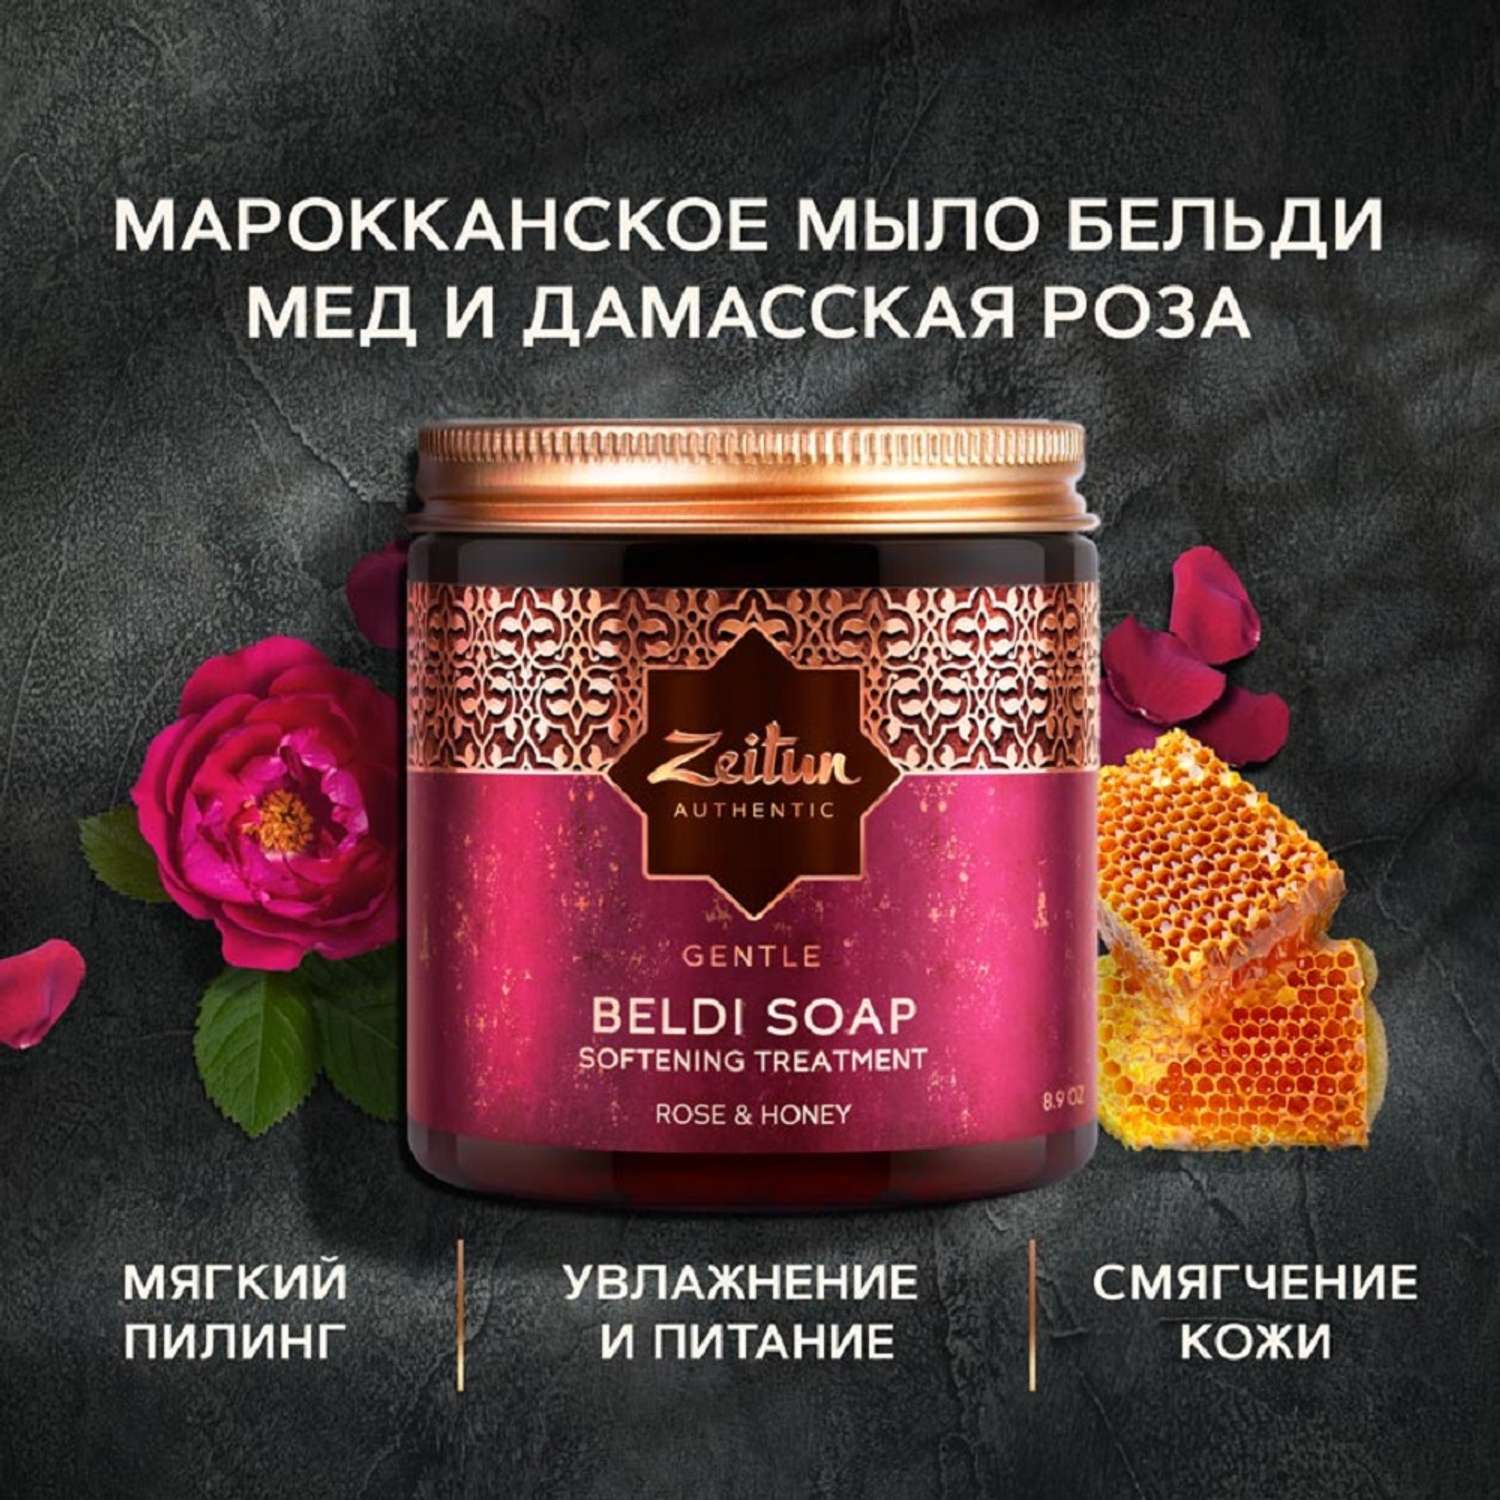 Бельди Zeitun густое мыло для бани с дамасской розой и медом 250мл - фото 1